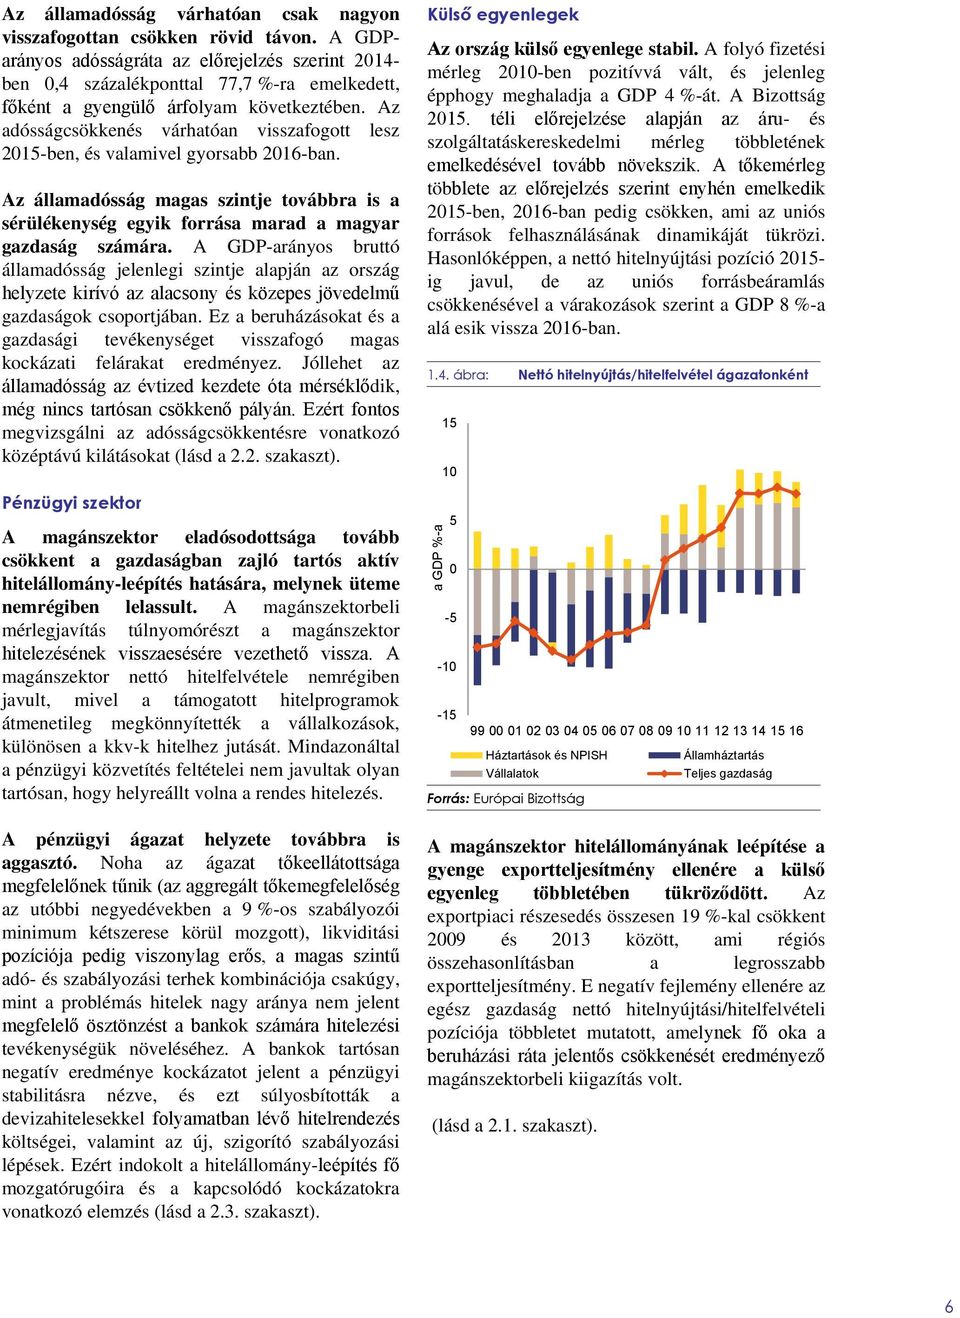 Az adósságcsökkenés várhatóan visszafogott lesz 2015-ben, és valamivel gyorsabb 2016-ban. Az államadósság magas szintje továbbra is a sérülékenység egyik forrása marad a magyar gazdaság számára.